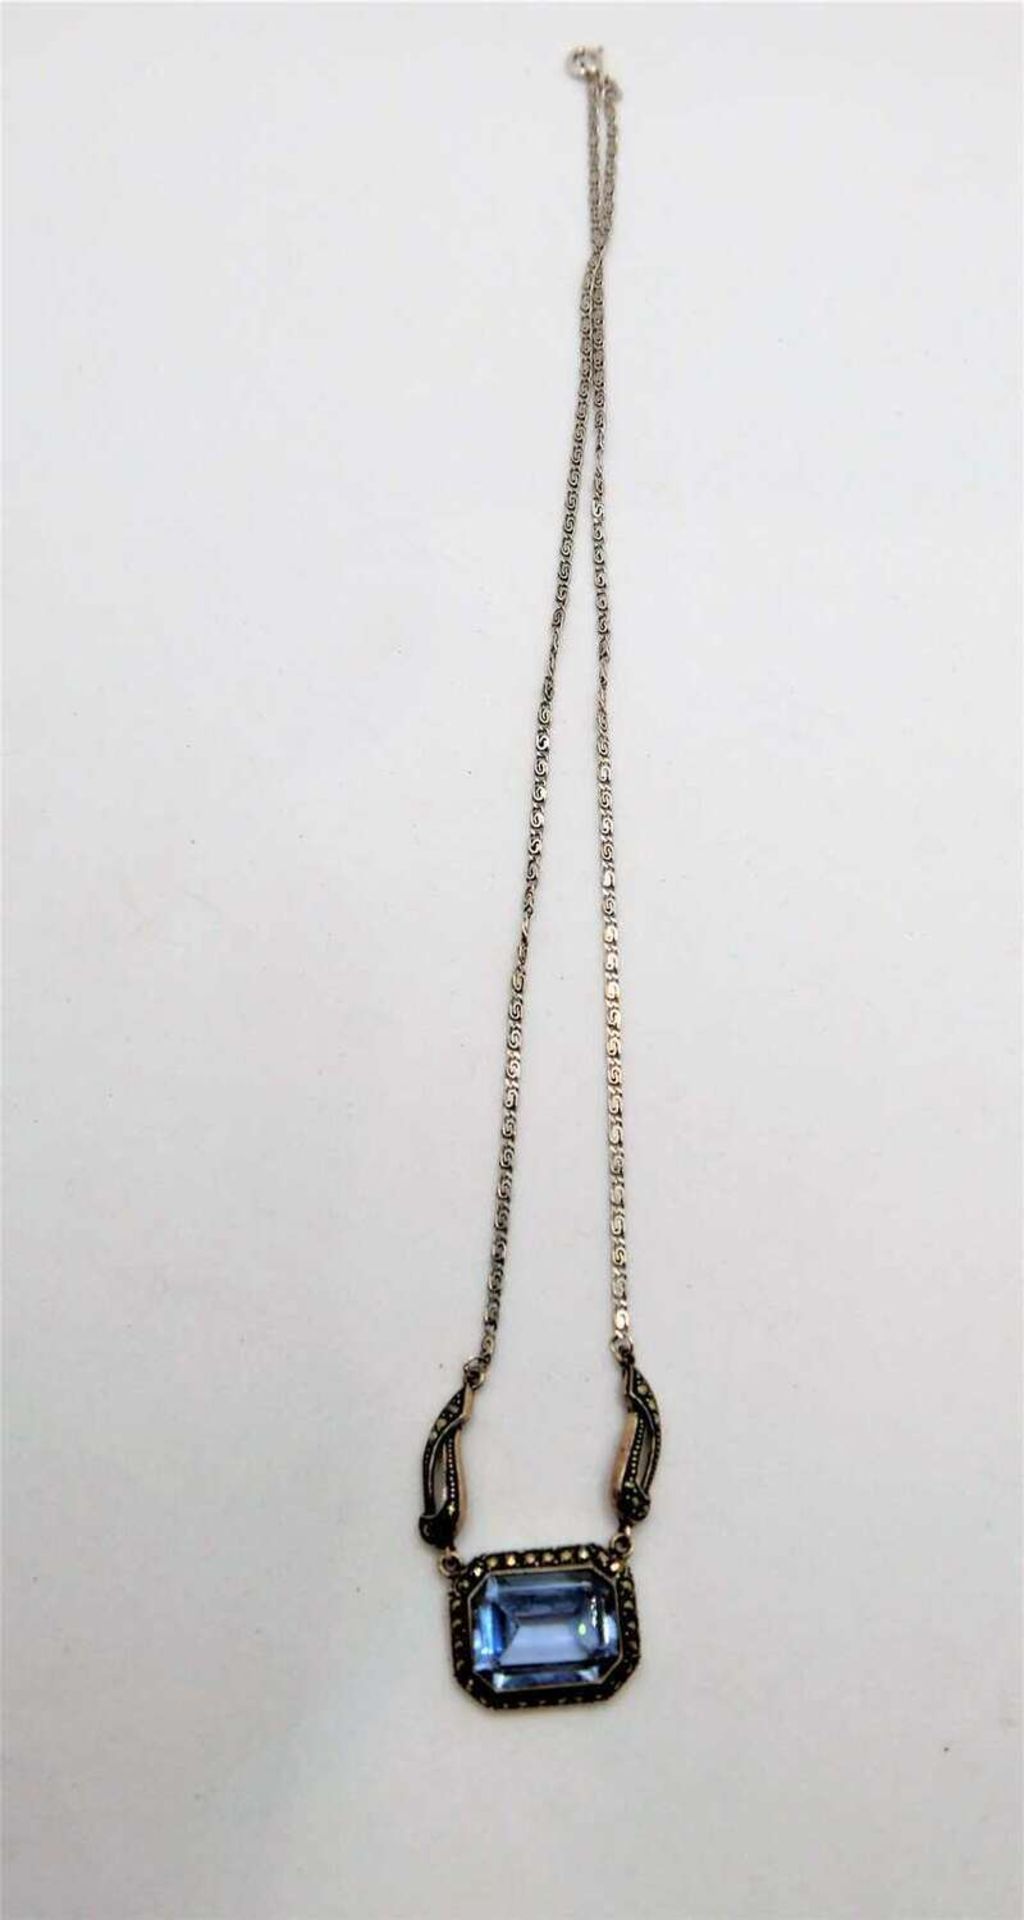 Collier im Jugendstil, 925er Silber, besetzt mit 1 Blautopas. Länge ca. 46 cm Art Nouveau necklace,